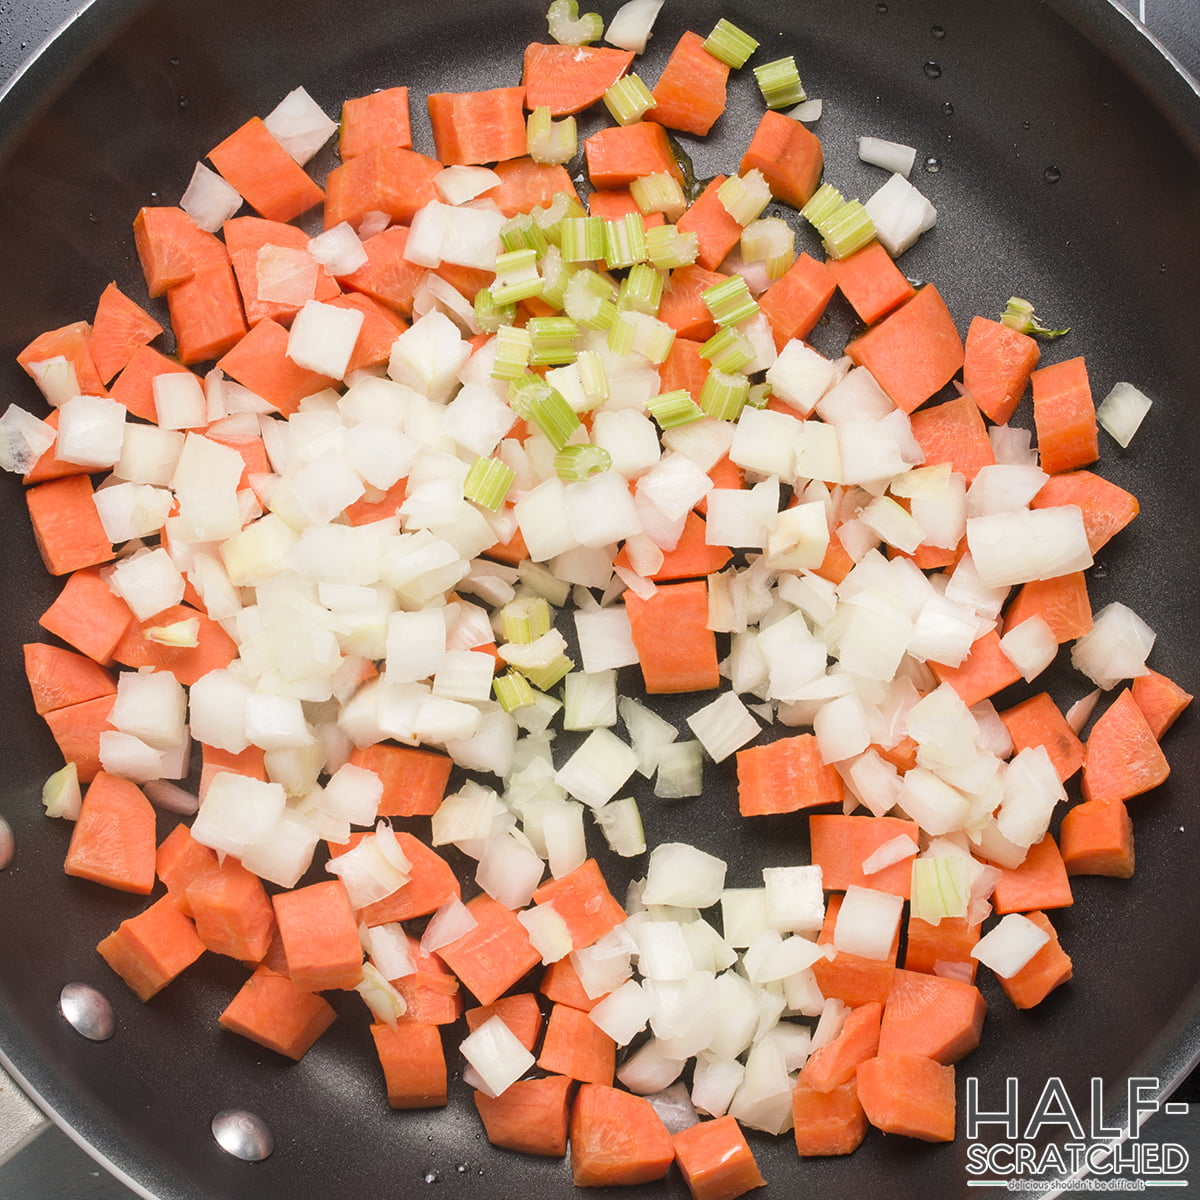 Raw vegetables in pan